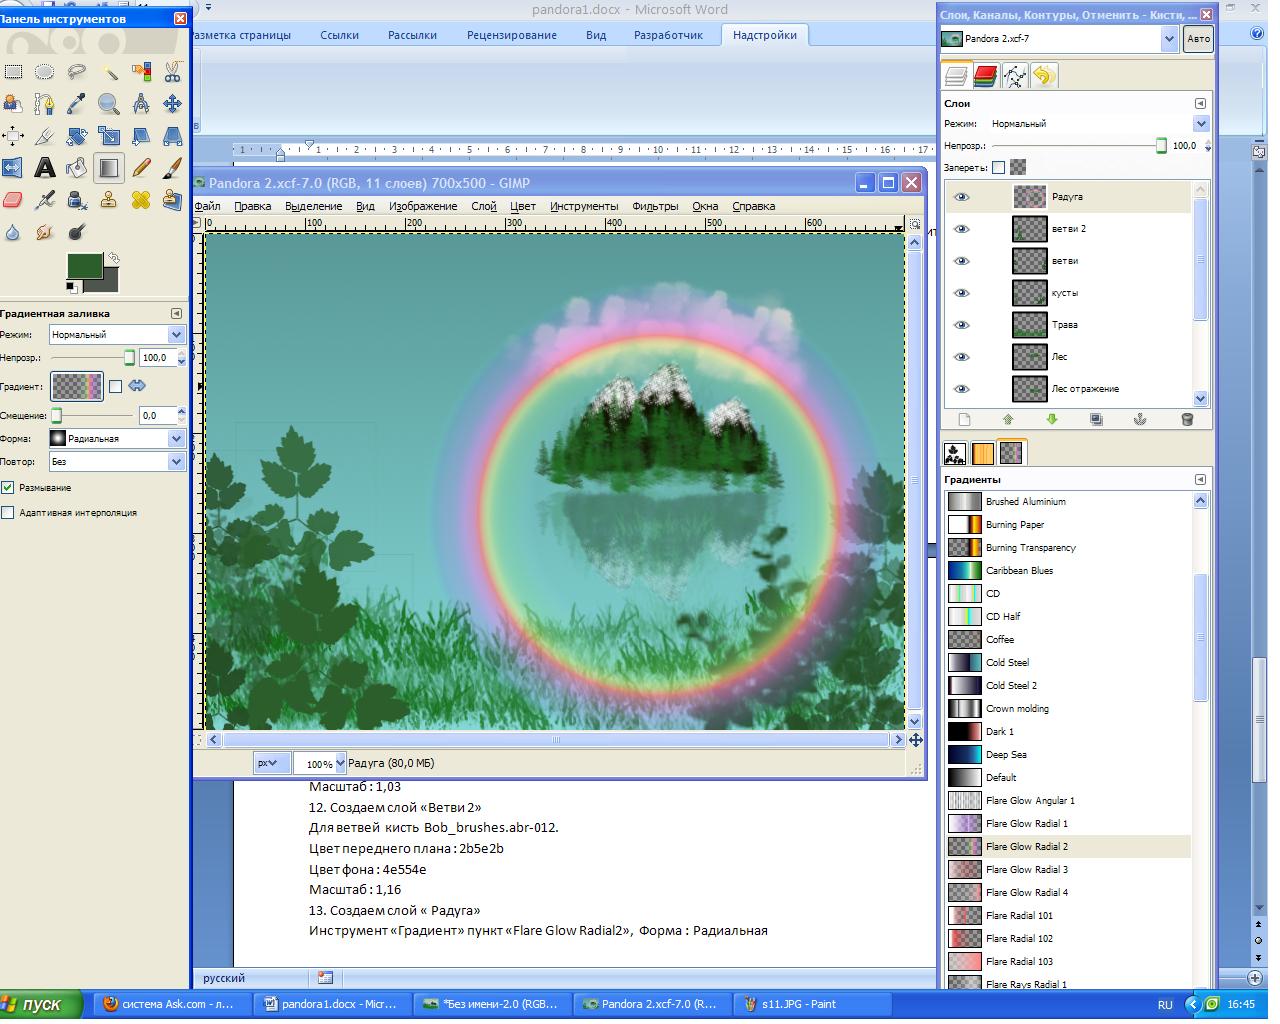 Методическая разработка по графическому редактору GIMP в текстовом формате DOC и описание работы в виде презентации